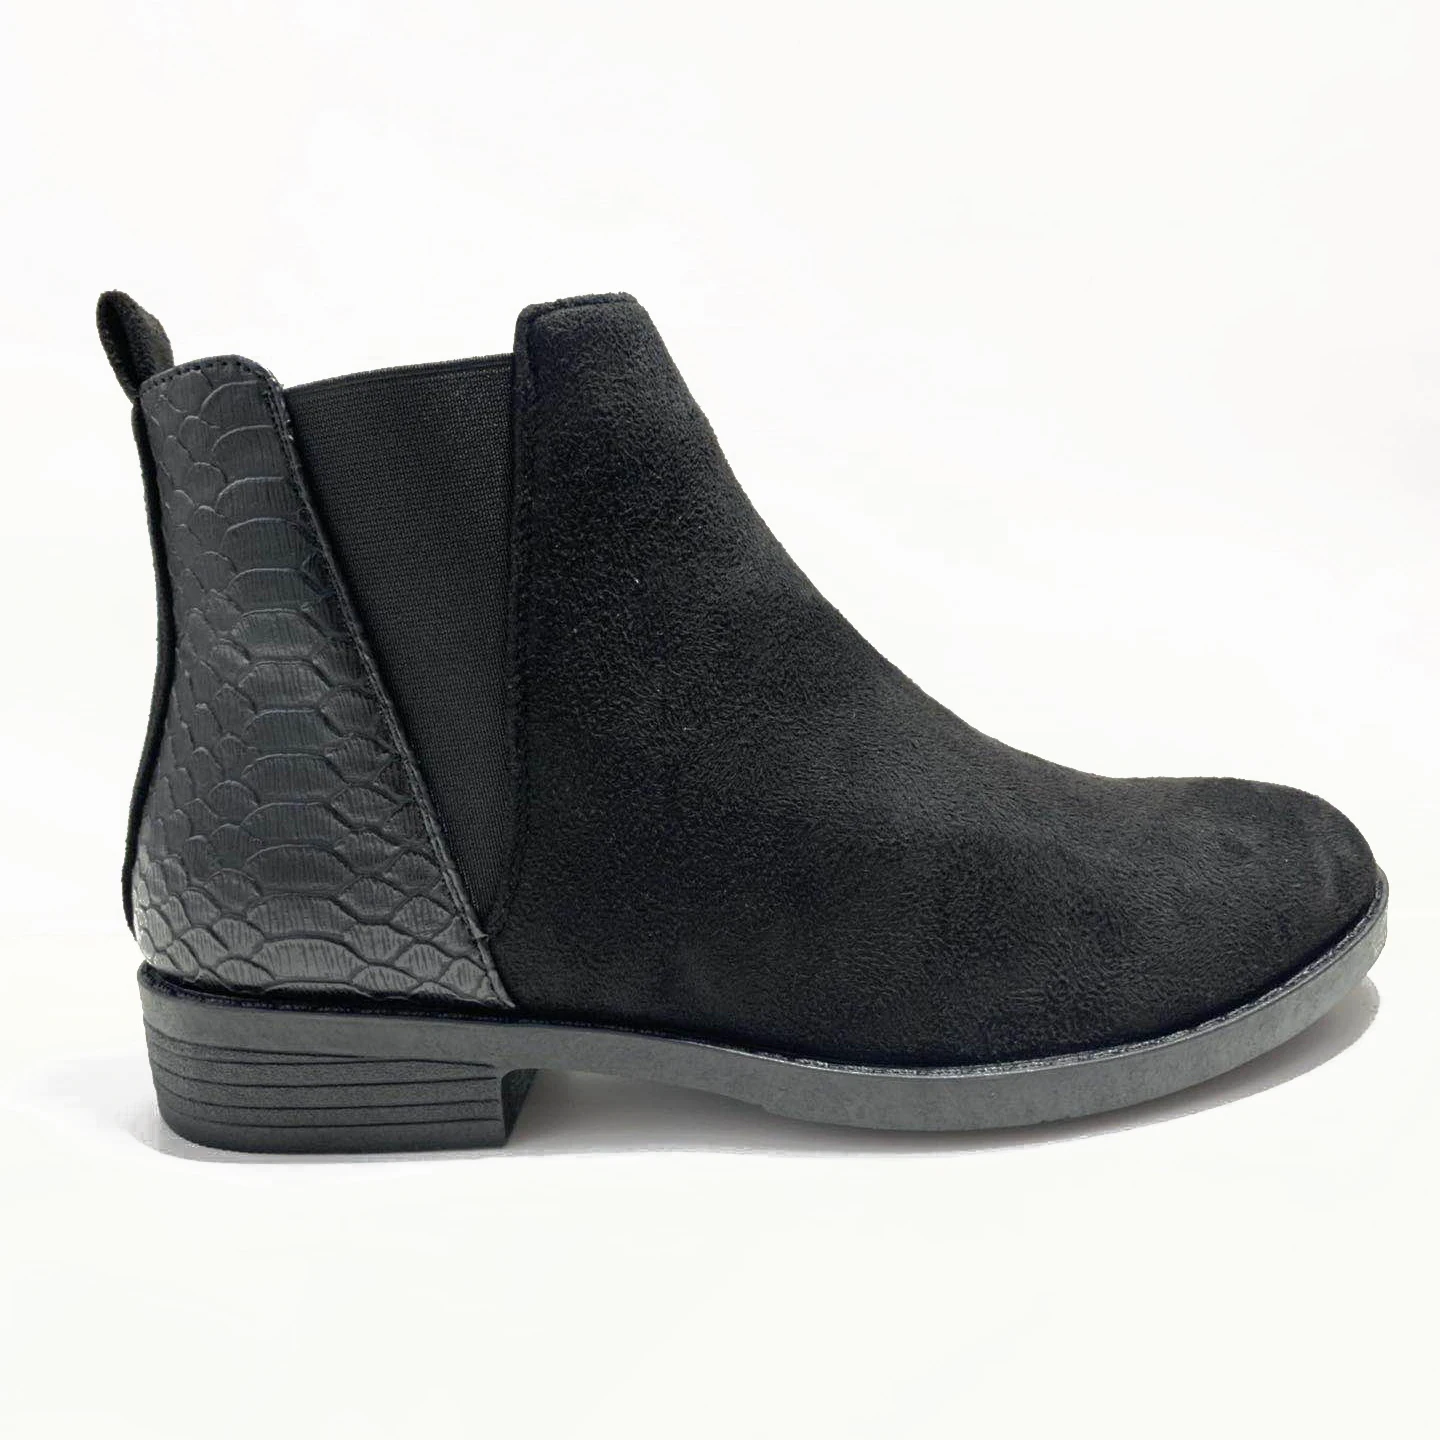 2022 Latest wholesale suede boots women rivet shoes boots ladies ankle winter snow boots